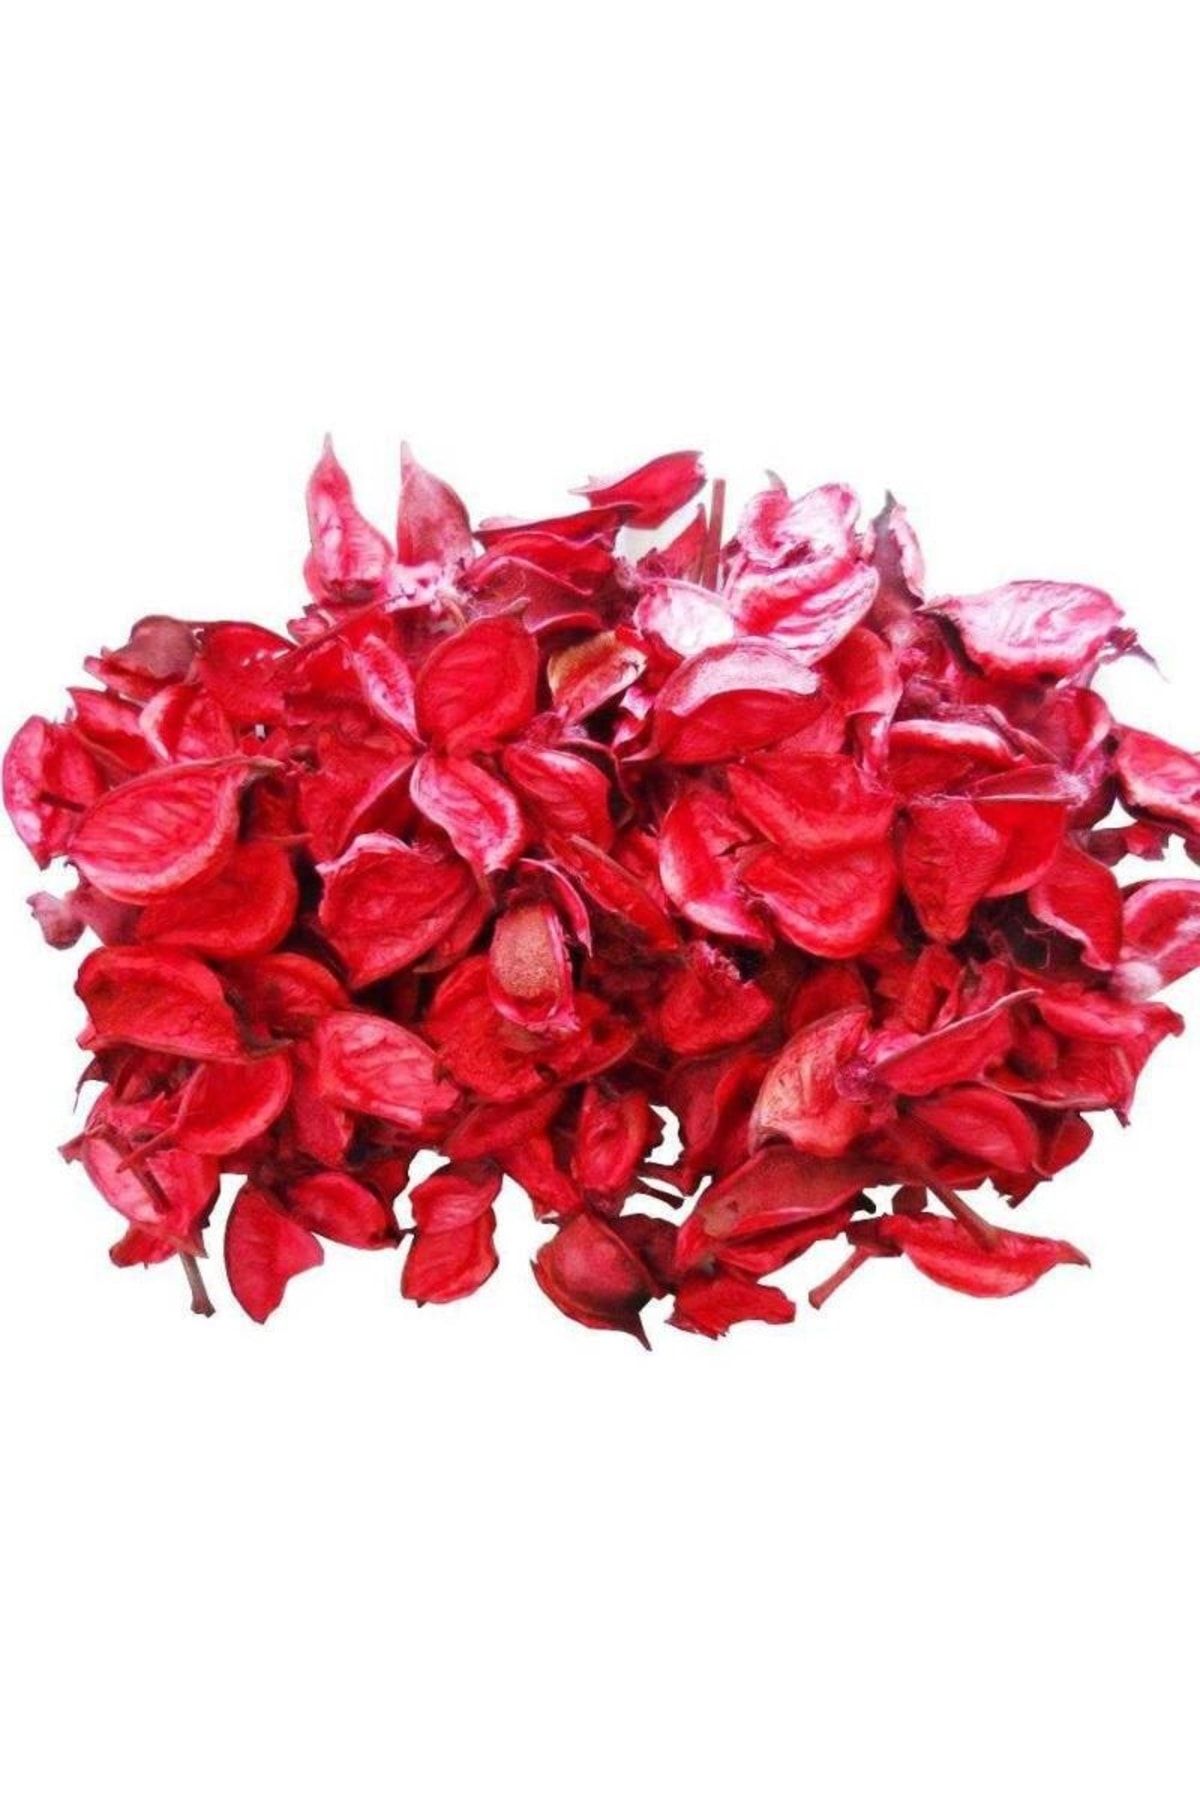 Hkm Hobim Kırmızı Gül Kurusu Yaprağı Kokulu Dekoratif Masa Süsleme Romantik Süs 100 Gram Fiyatı 